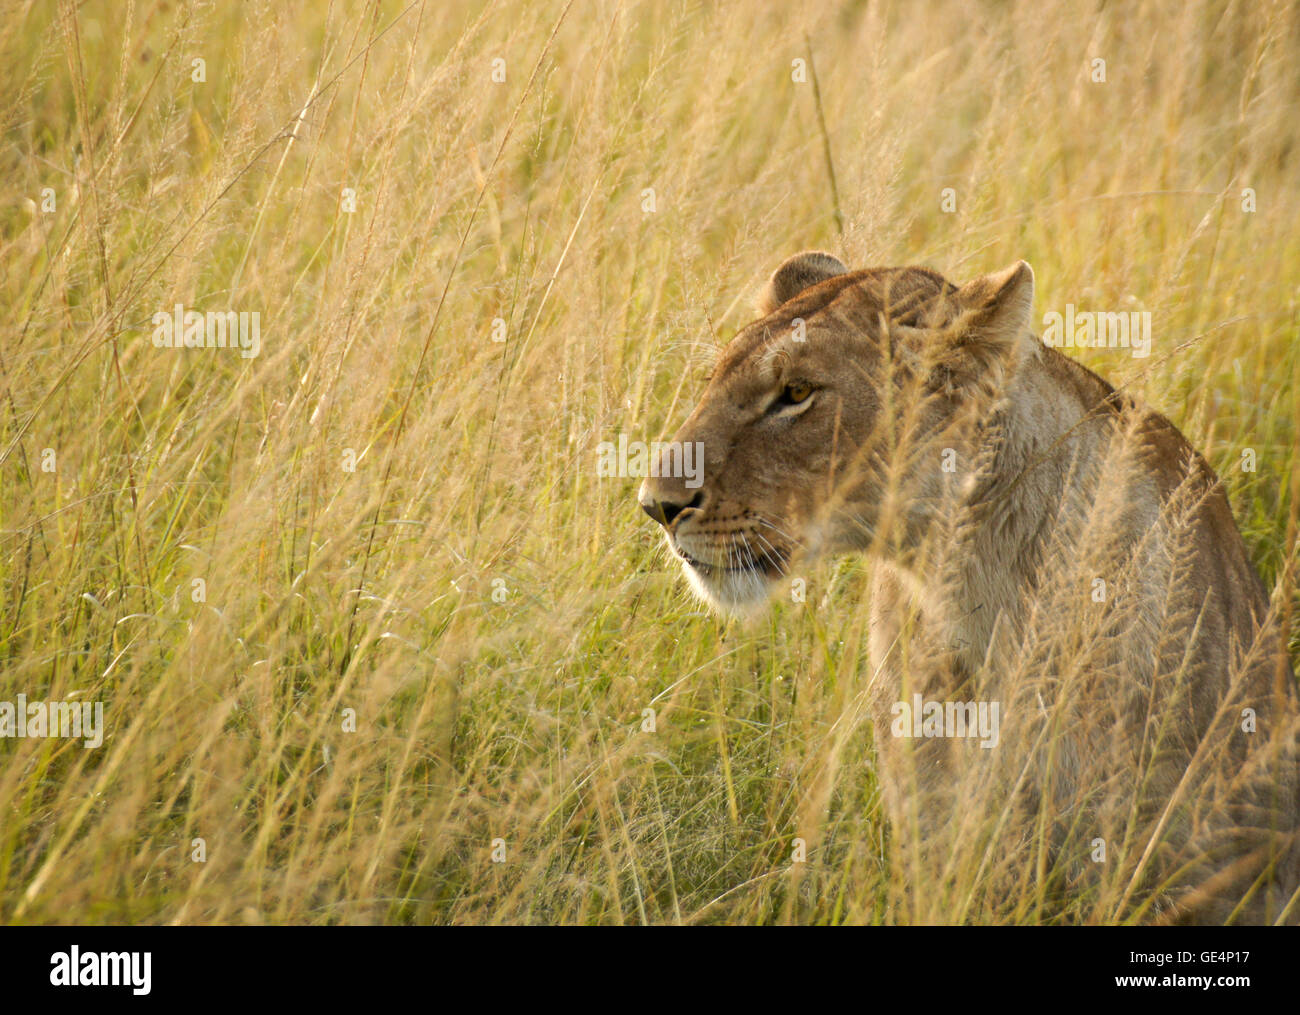 Porträt der weiblichen afrikanischen Löwen in langen Rasen, Masai Mara, Kenia Stockfoto